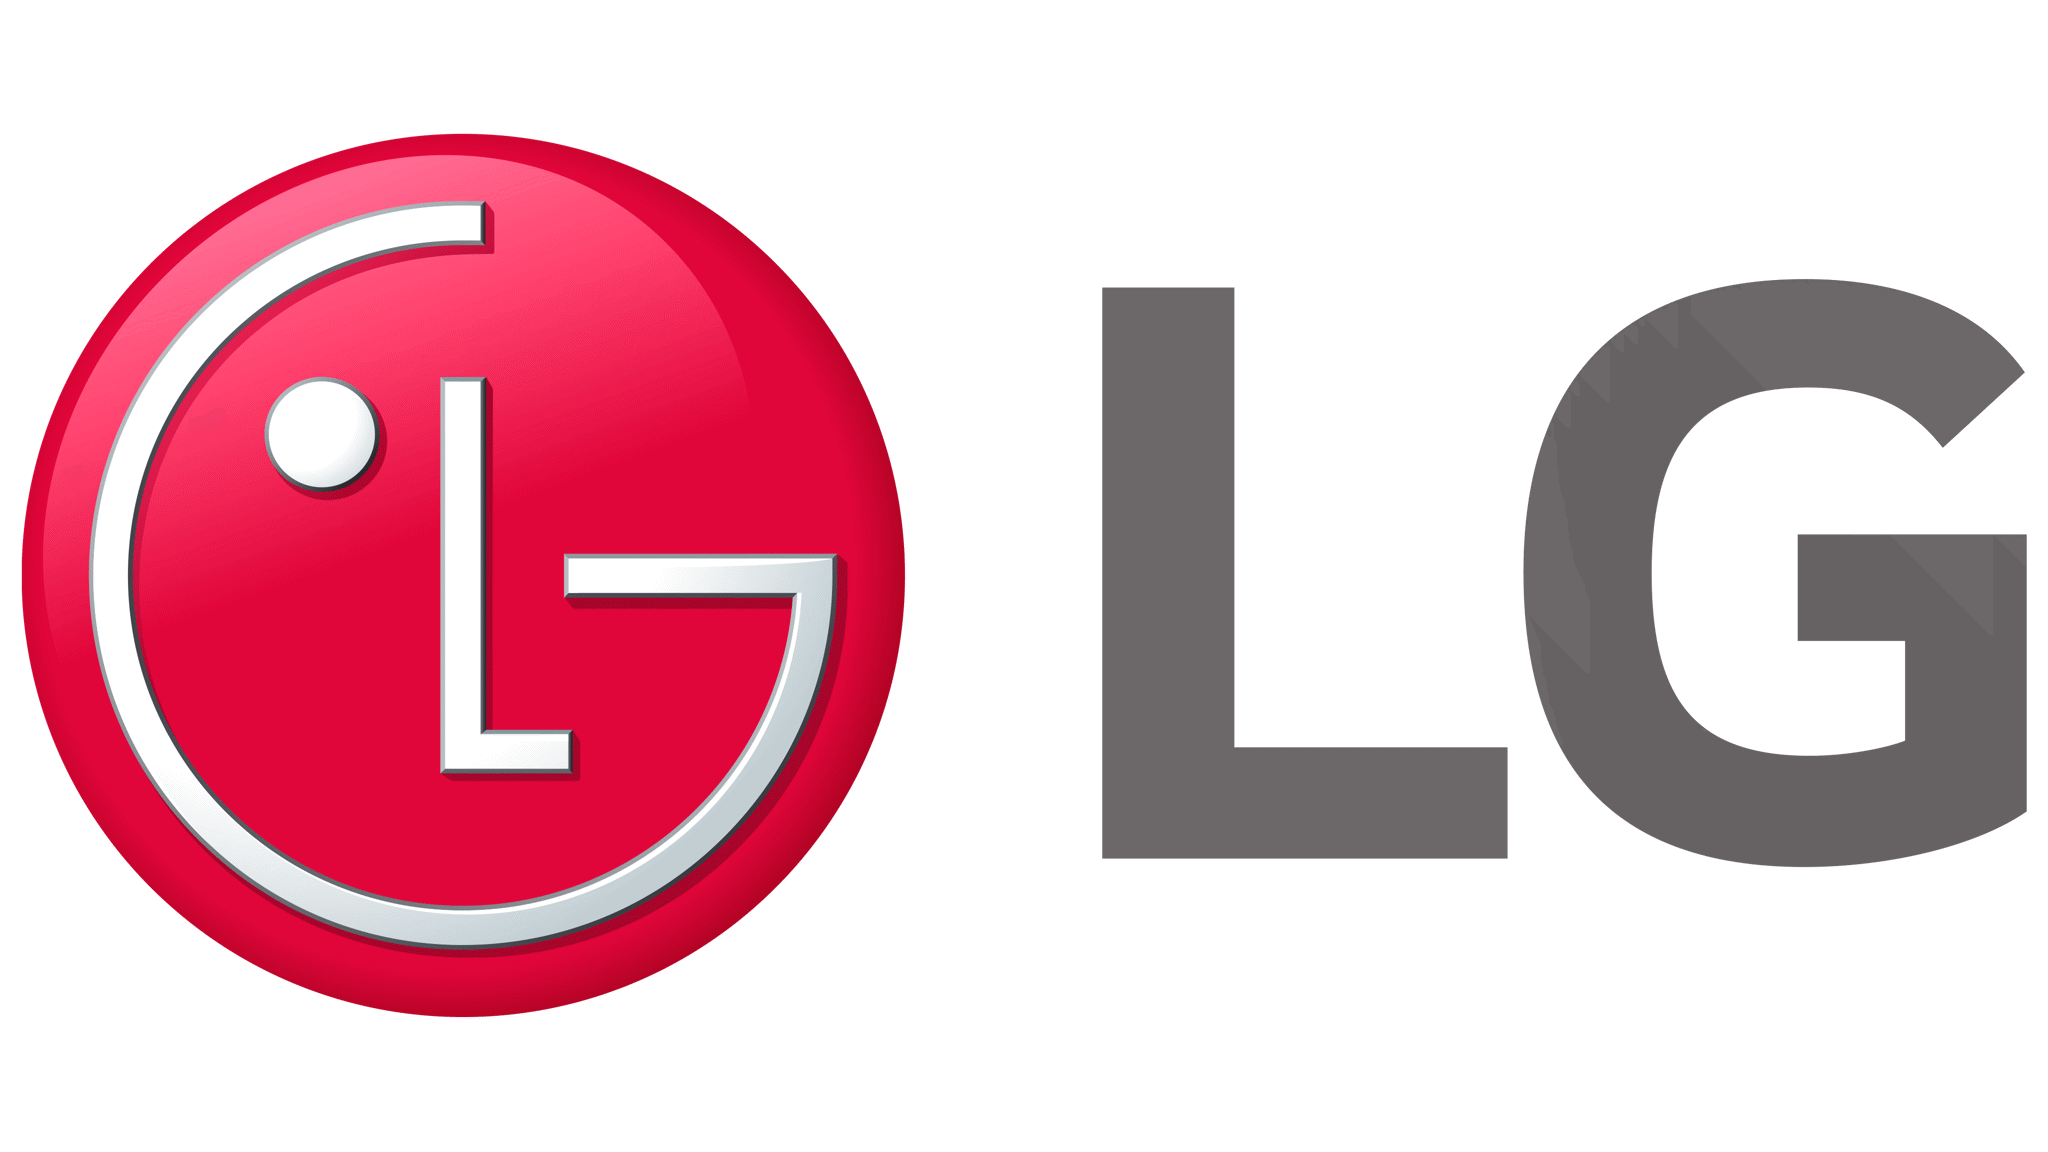 Obrázek pro výrobce LG